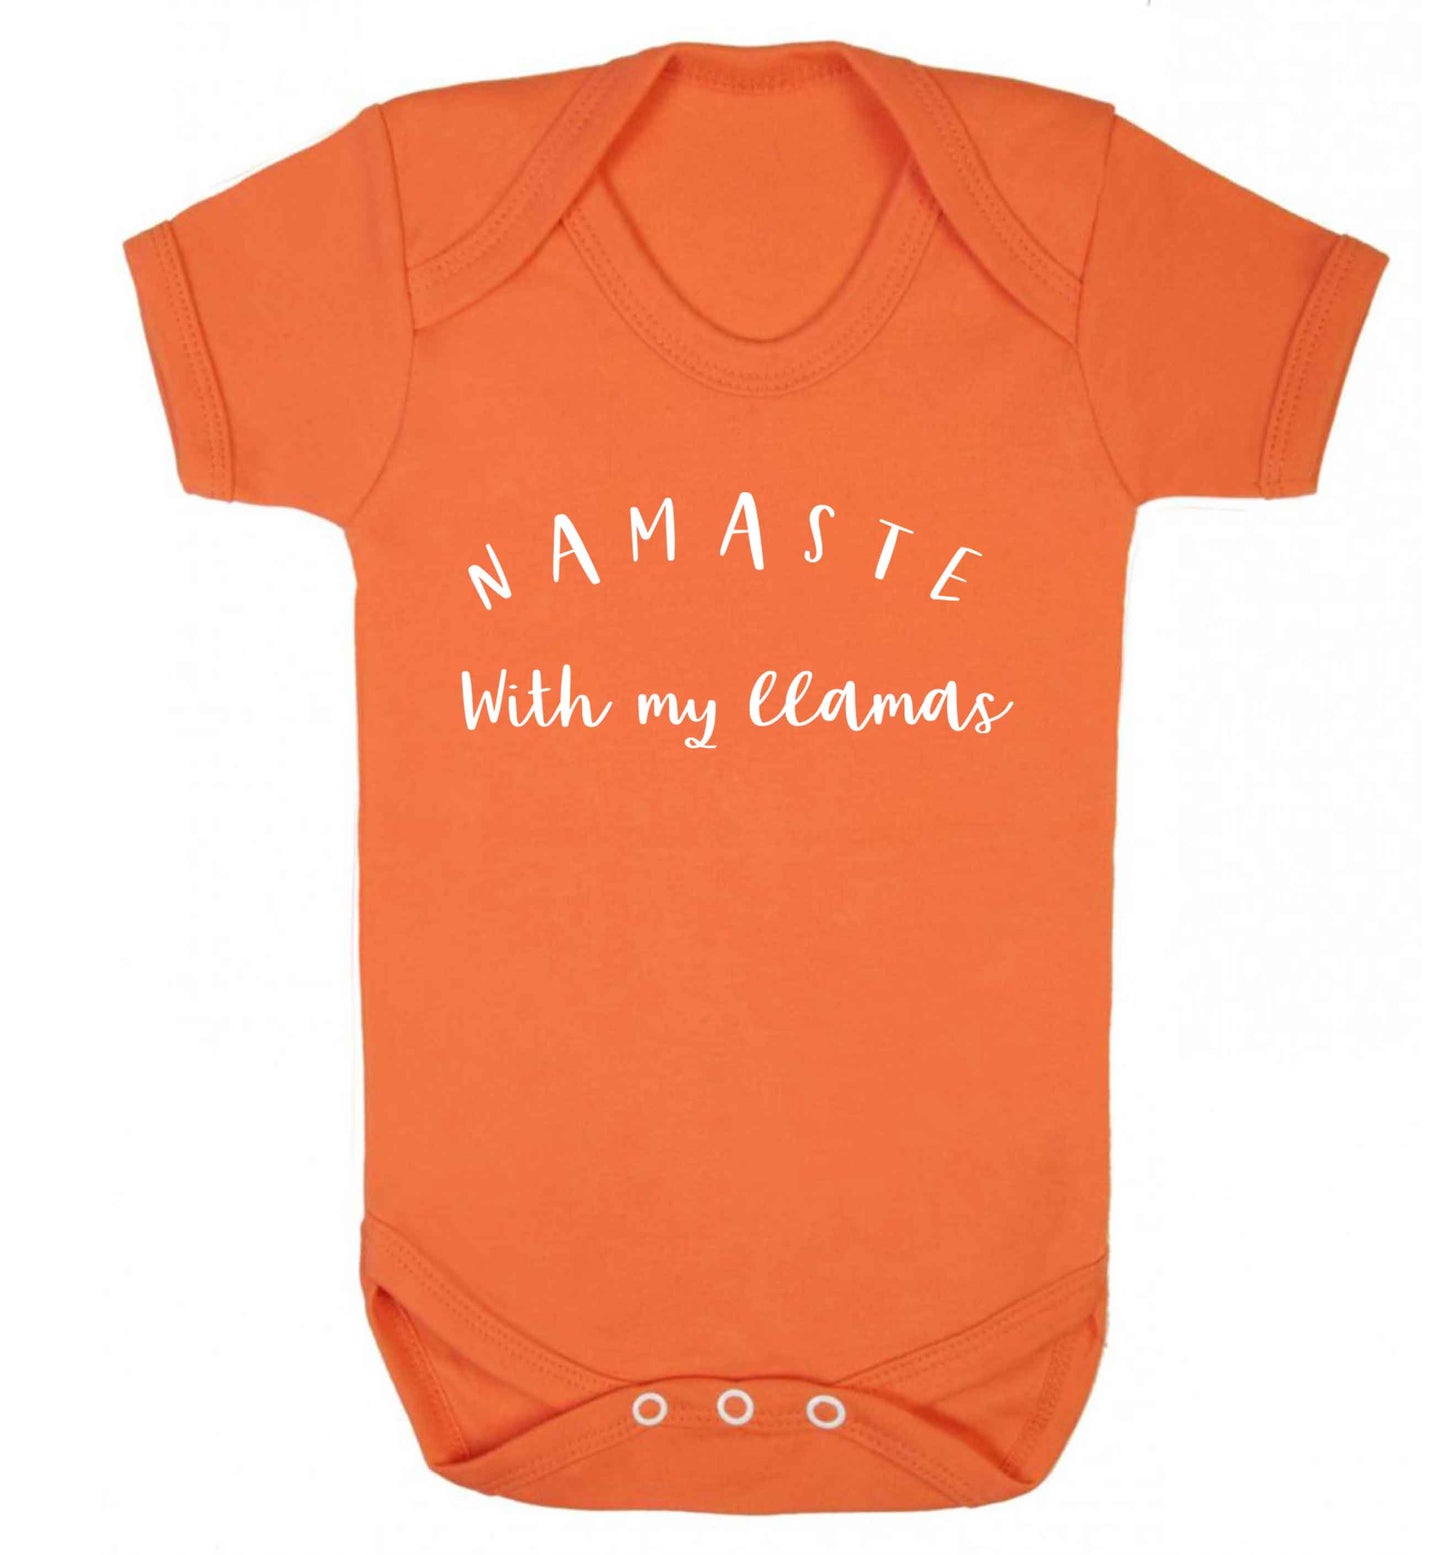 Namaste with my llamas Baby Vest orange 18-24 months